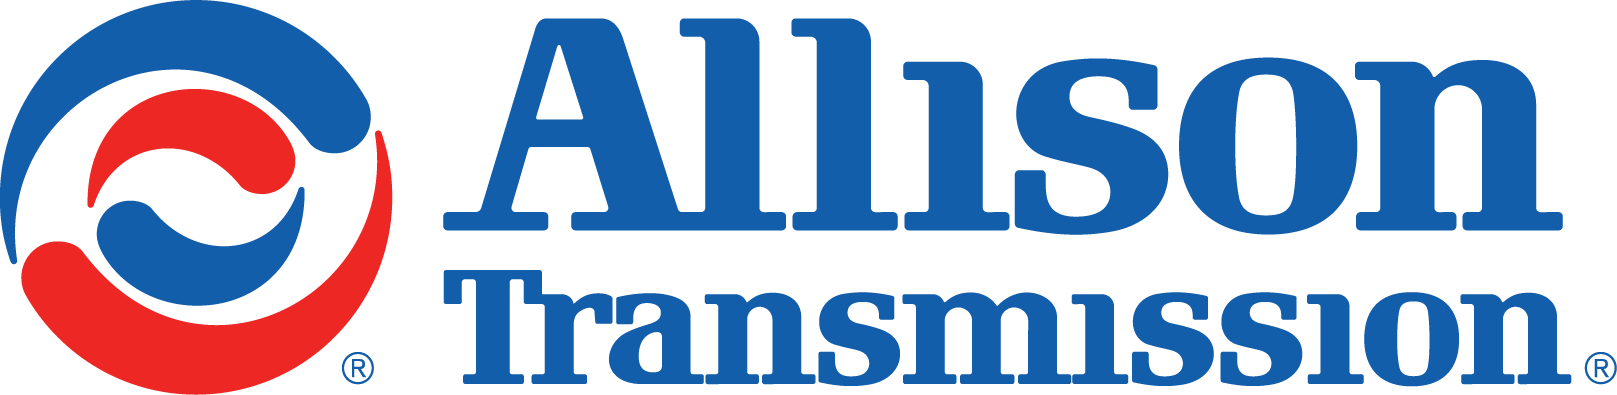 Allison Transmission Logo png